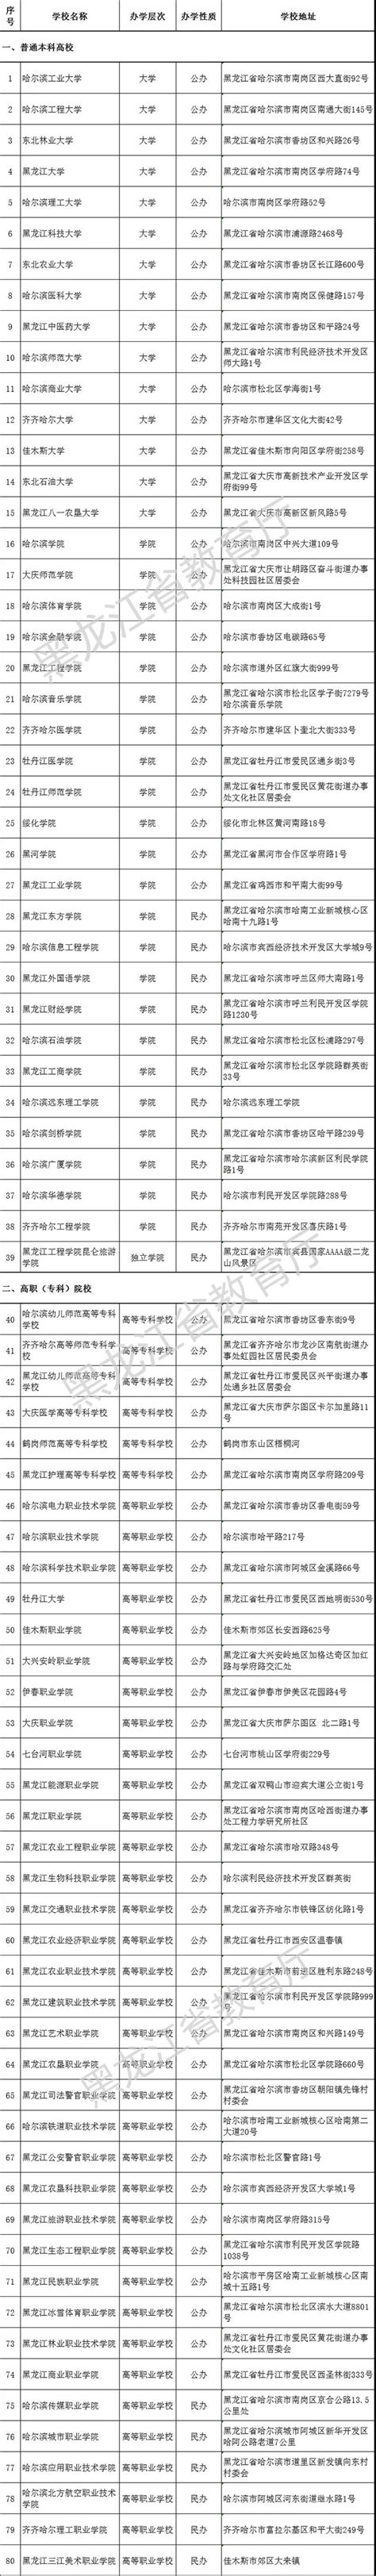 权威解读新修订的《黑龙江省优化营商环境条例》-黑龙江省人民政府网